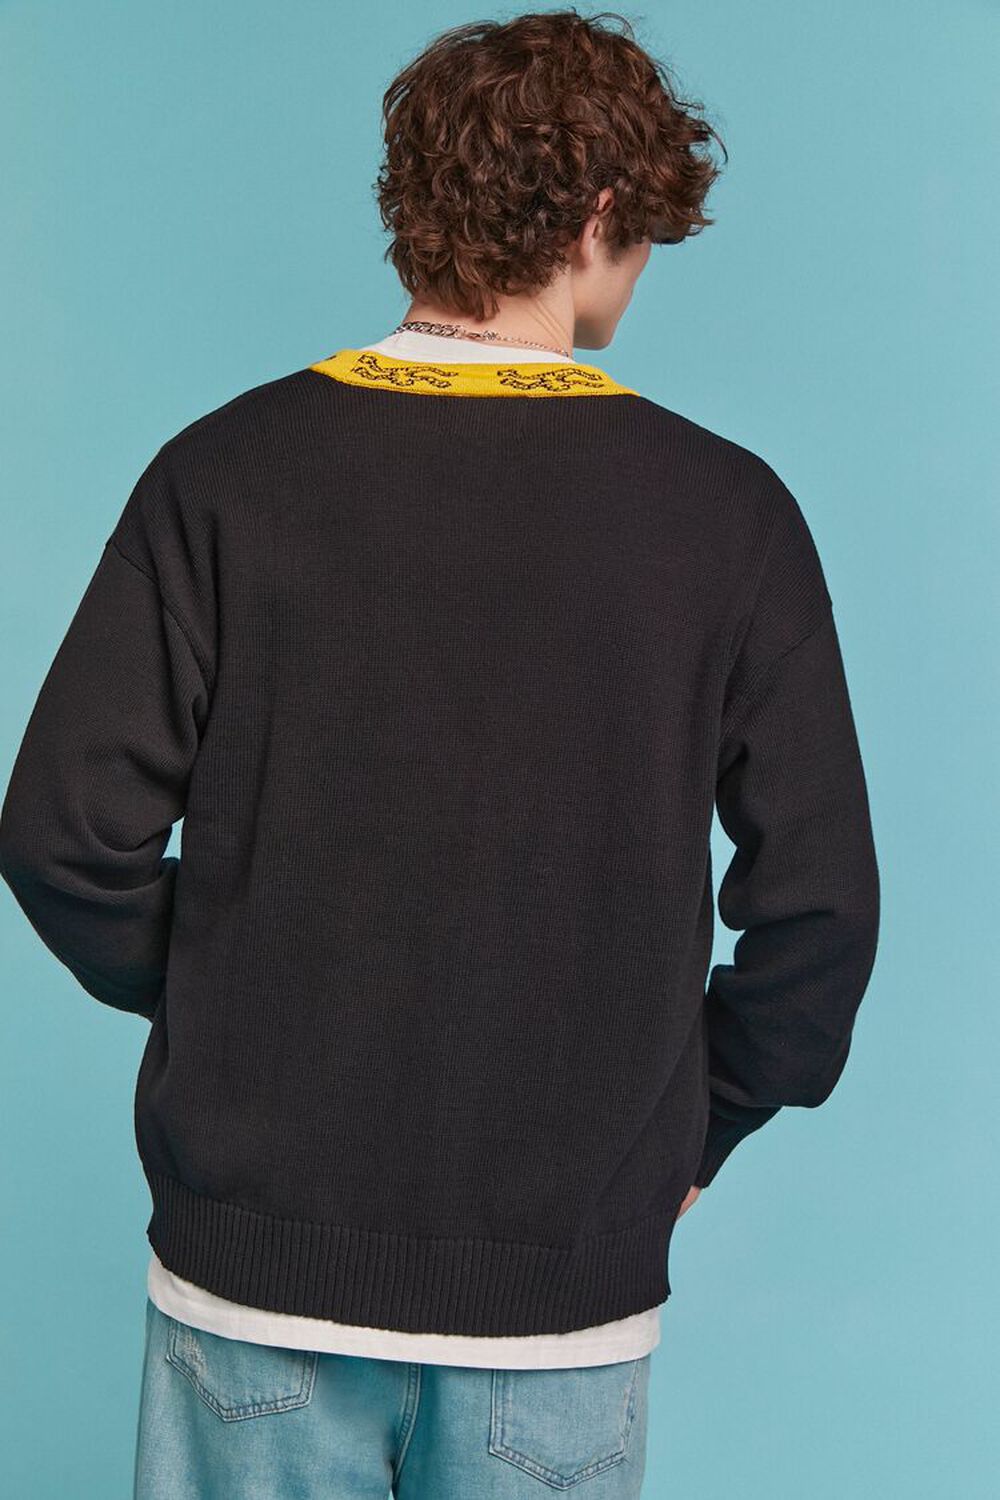 BLACK/YELLOW Airwalk Graphic Cardigan Sweater, image 3